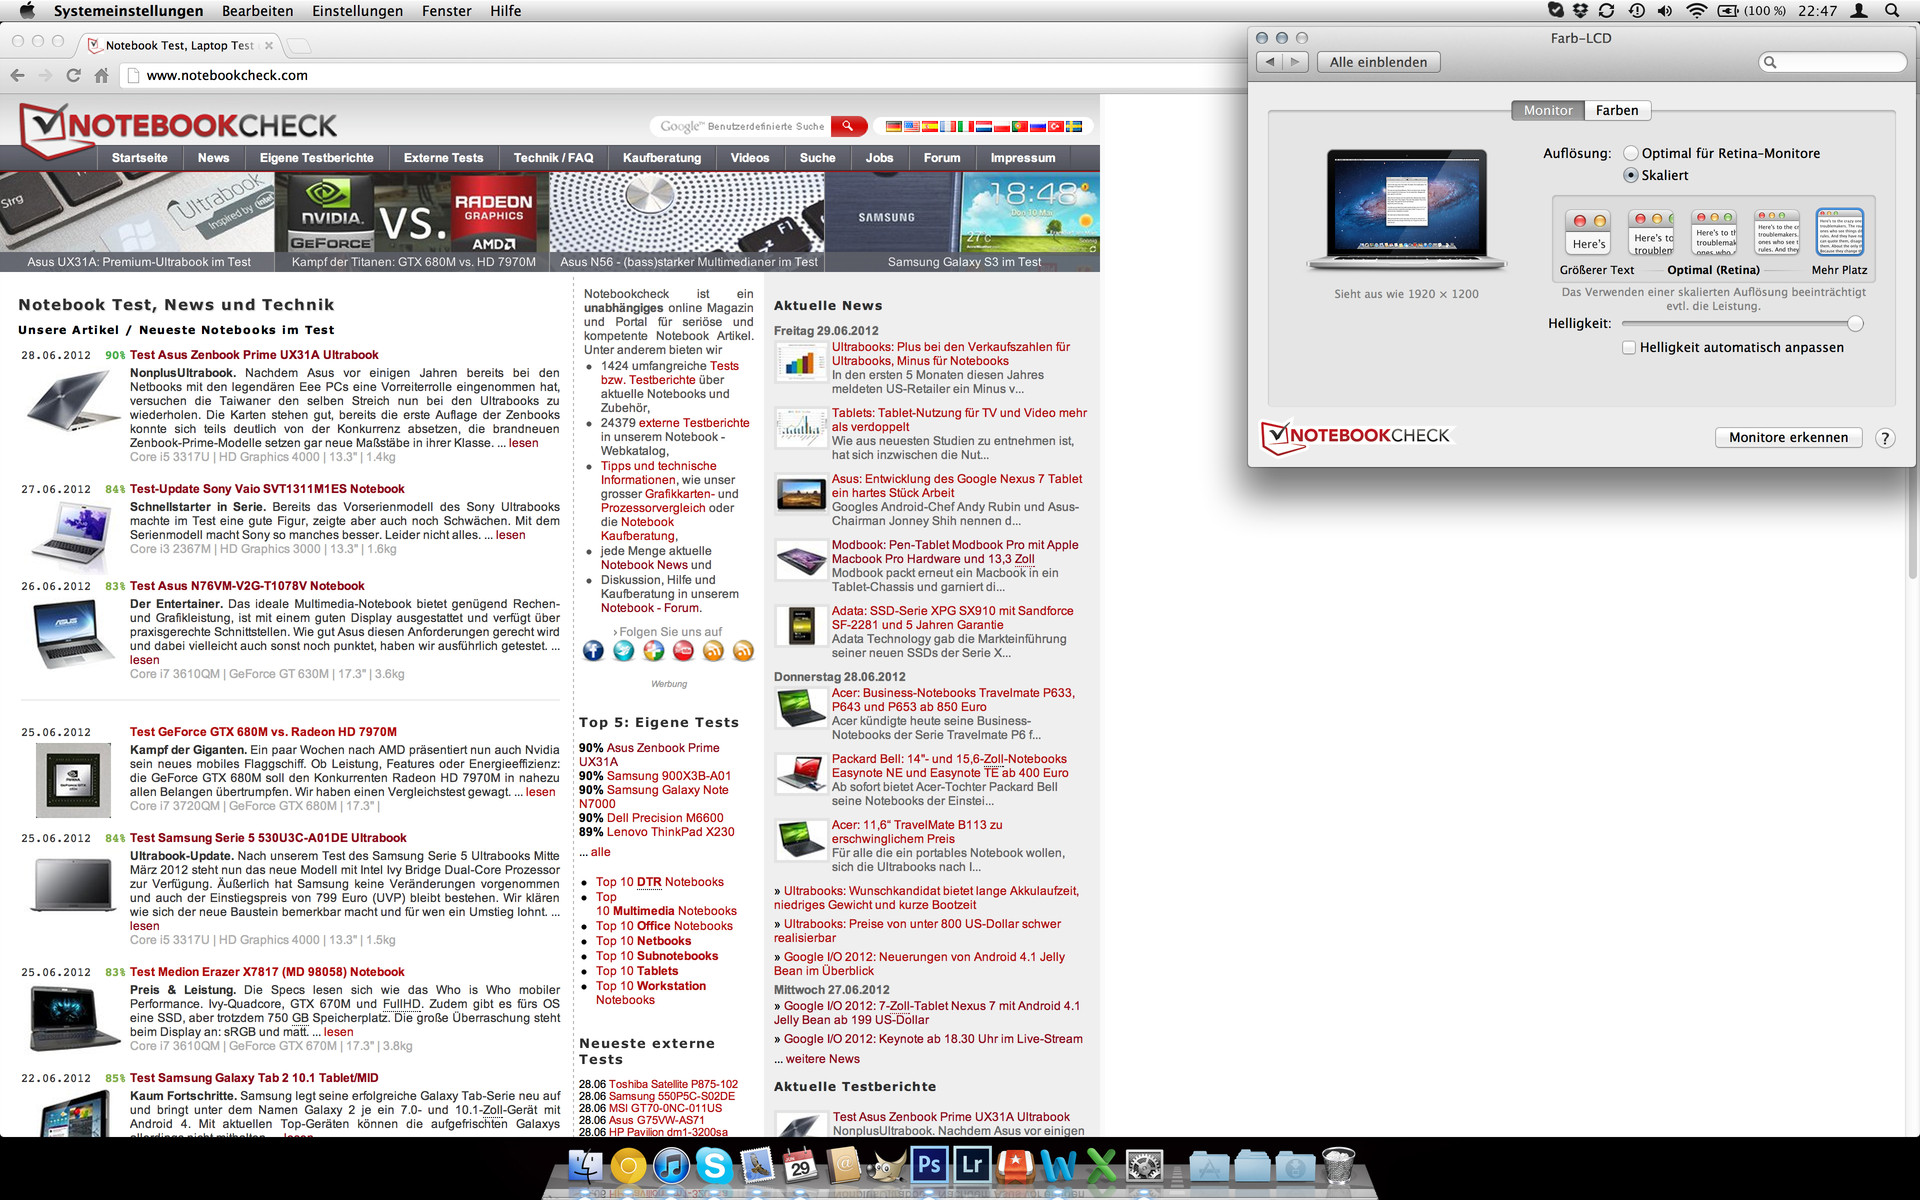 macbook pro 2012 non retina display pixels